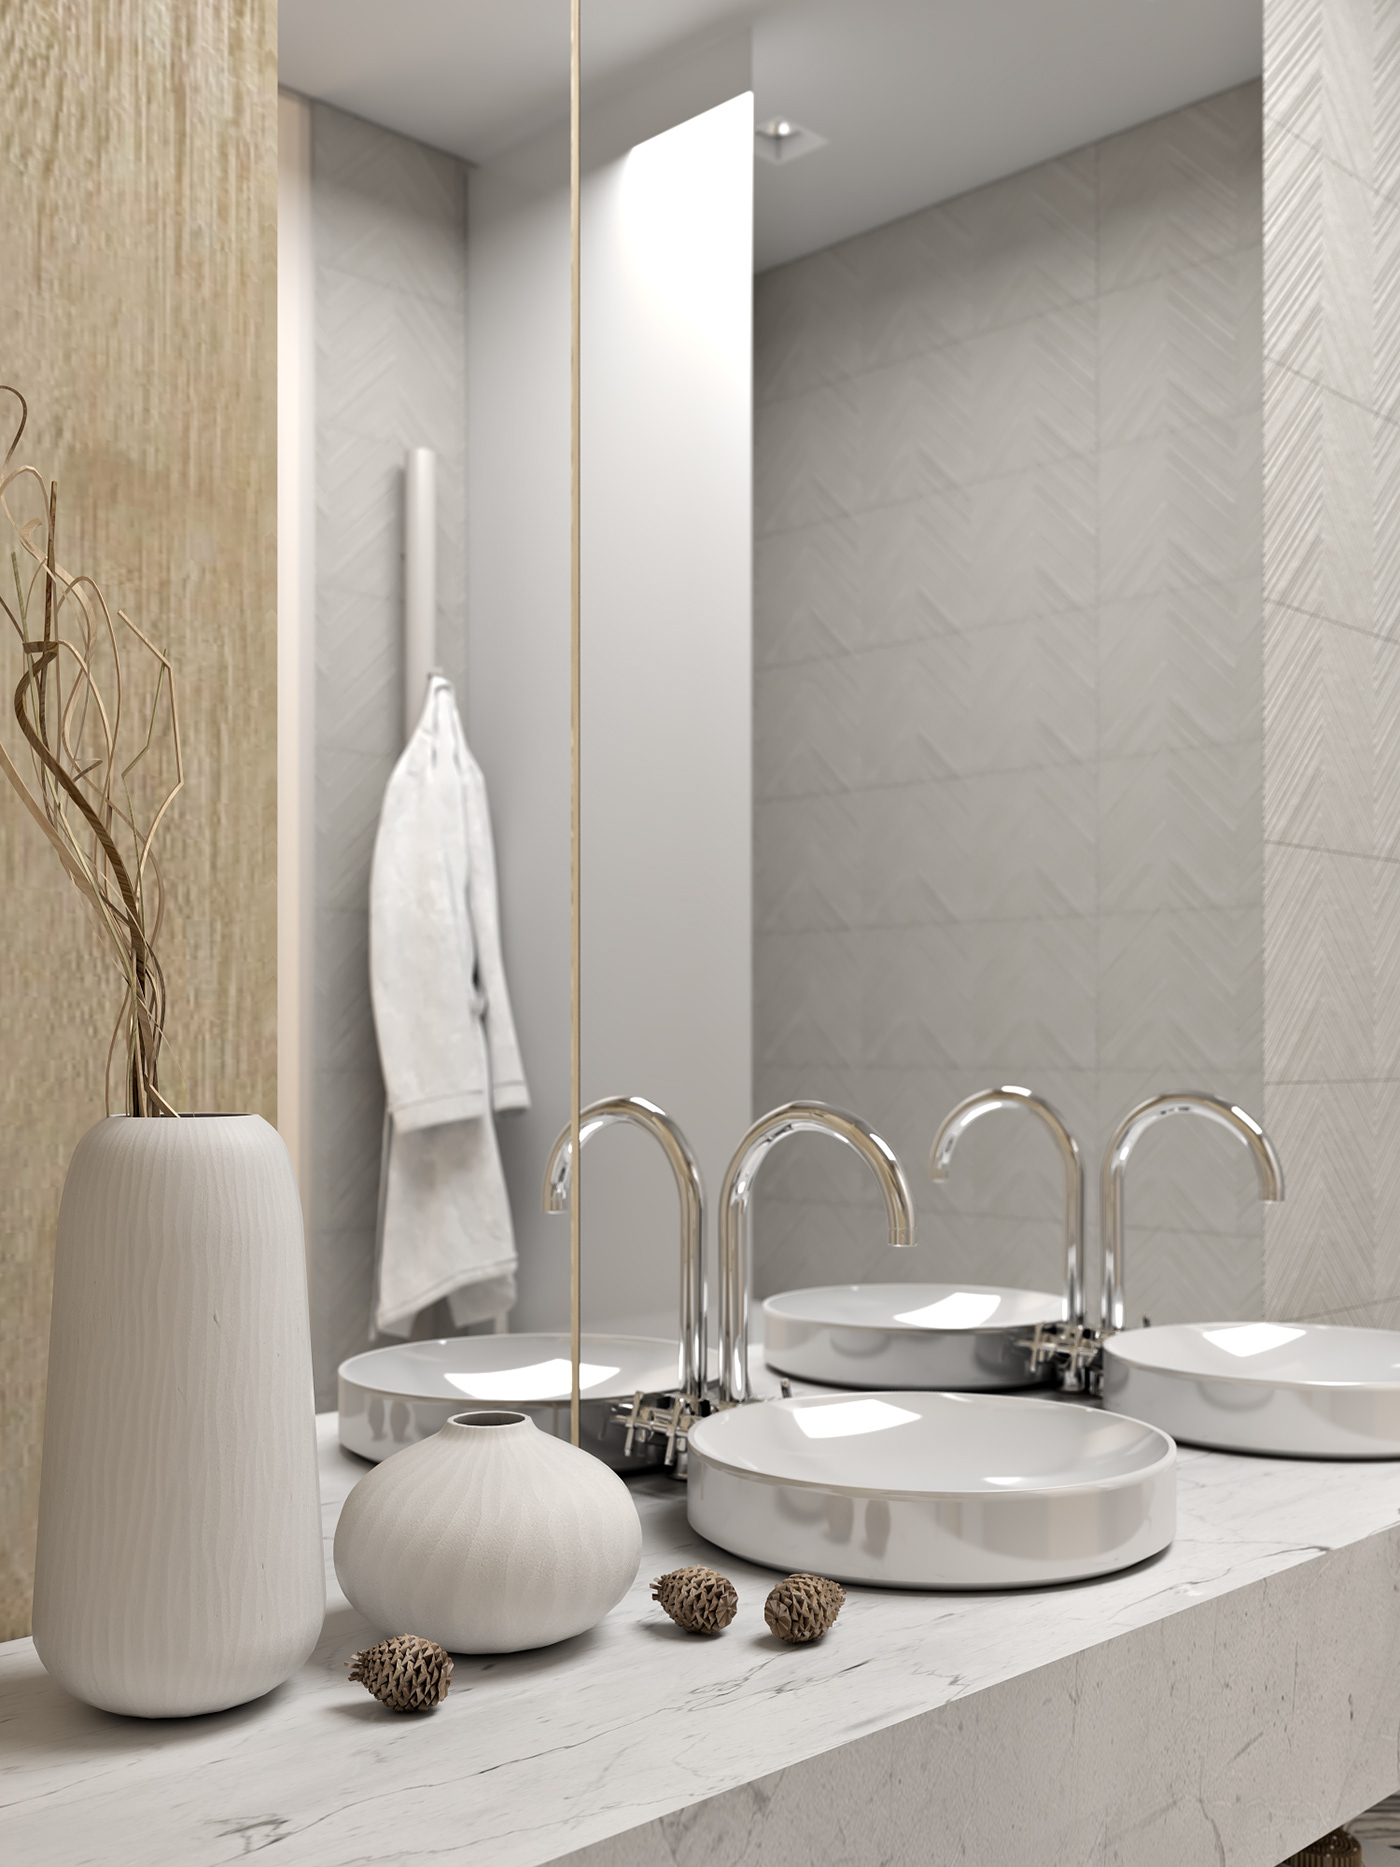 HDm2 homedesign Interior design interiordesign bedroomdesign bathroomdesign livingroomdesign